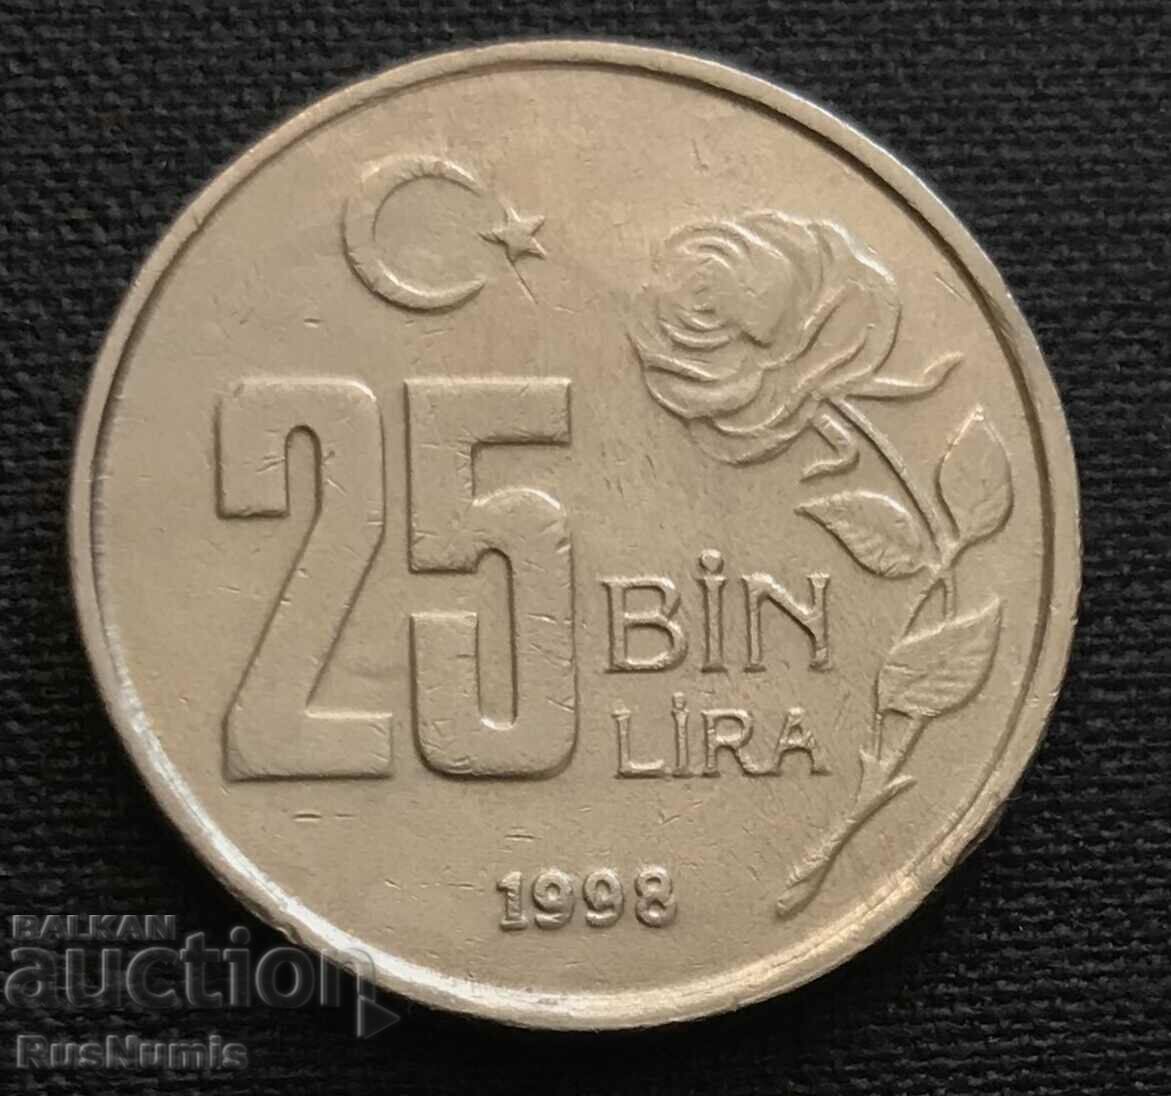 Turkey. 25,000 pounds 1998